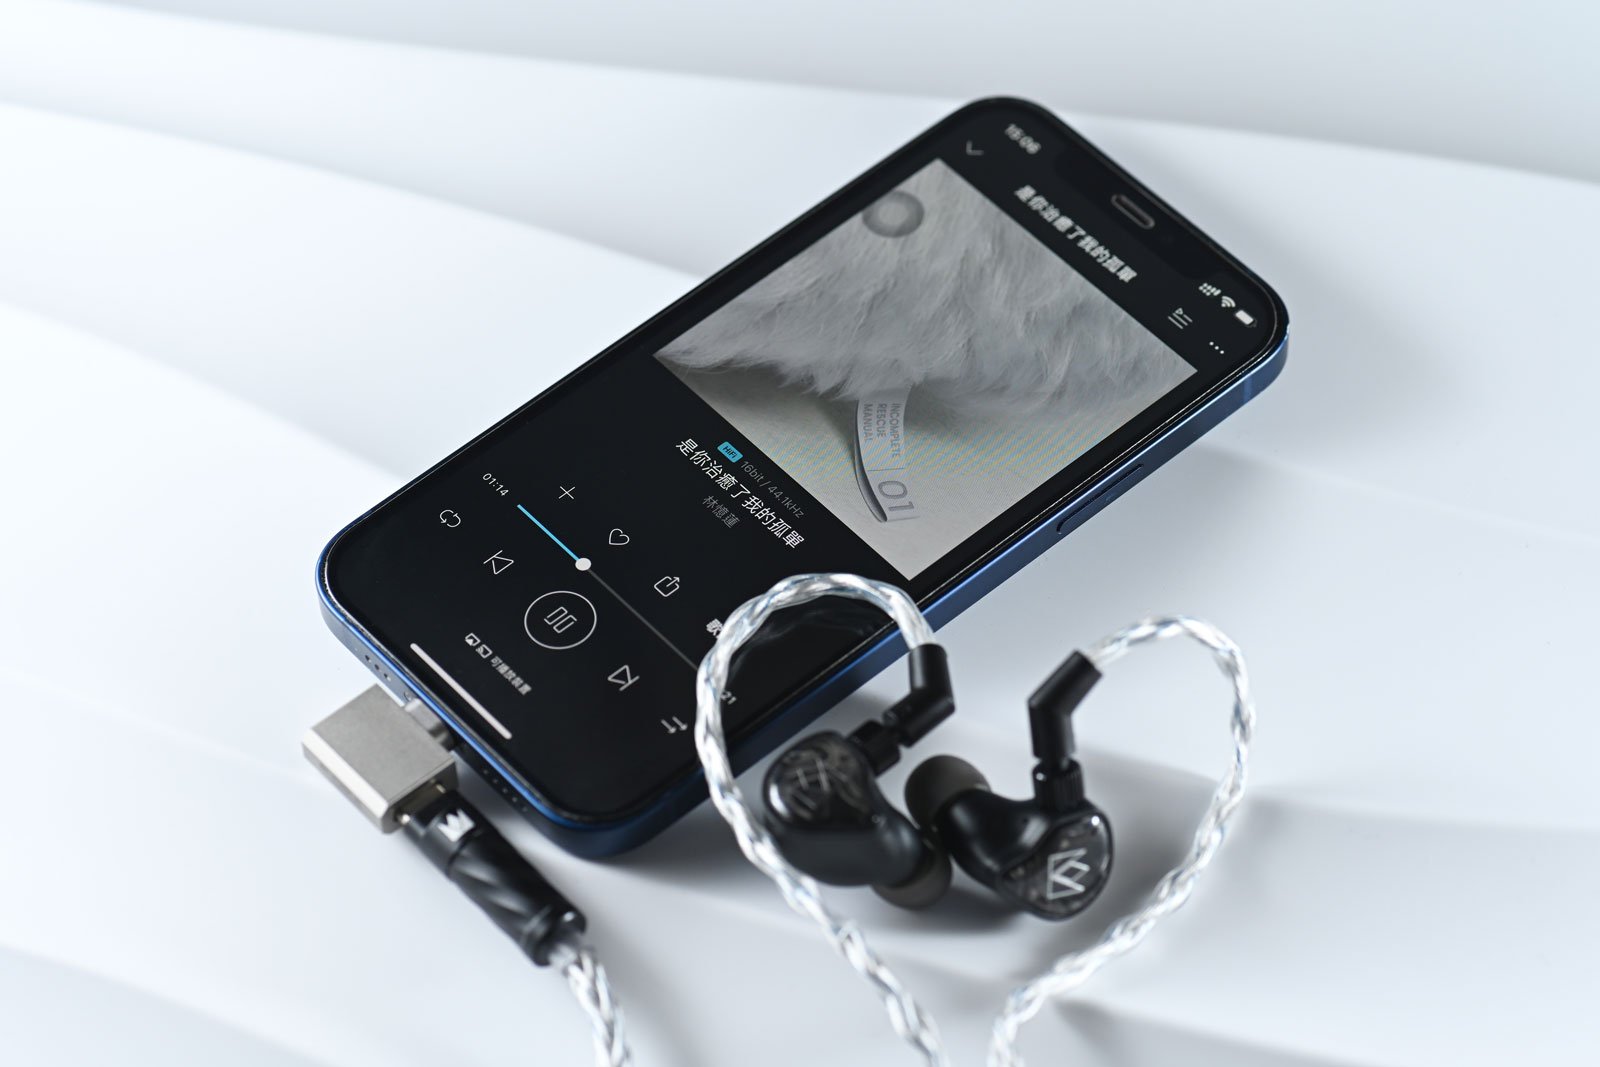 由聽力學博士 Dr. John 創辦的耳機品牌 Noble Audio，每款出品都各具特色，且有明確的目標群眾。像最新推出，首次選用全球最細小 xMEMS 單元型號 Cowell 的 IEM 耳機 XM-1，便專為追求便攜同時高音質的用家而設。採用了 USB-C 端子，且不用額外接駁 USB DAC 便可直駁手機聽歌，十分方便，而且聲音表現也有讓人一聽難忘的地方。